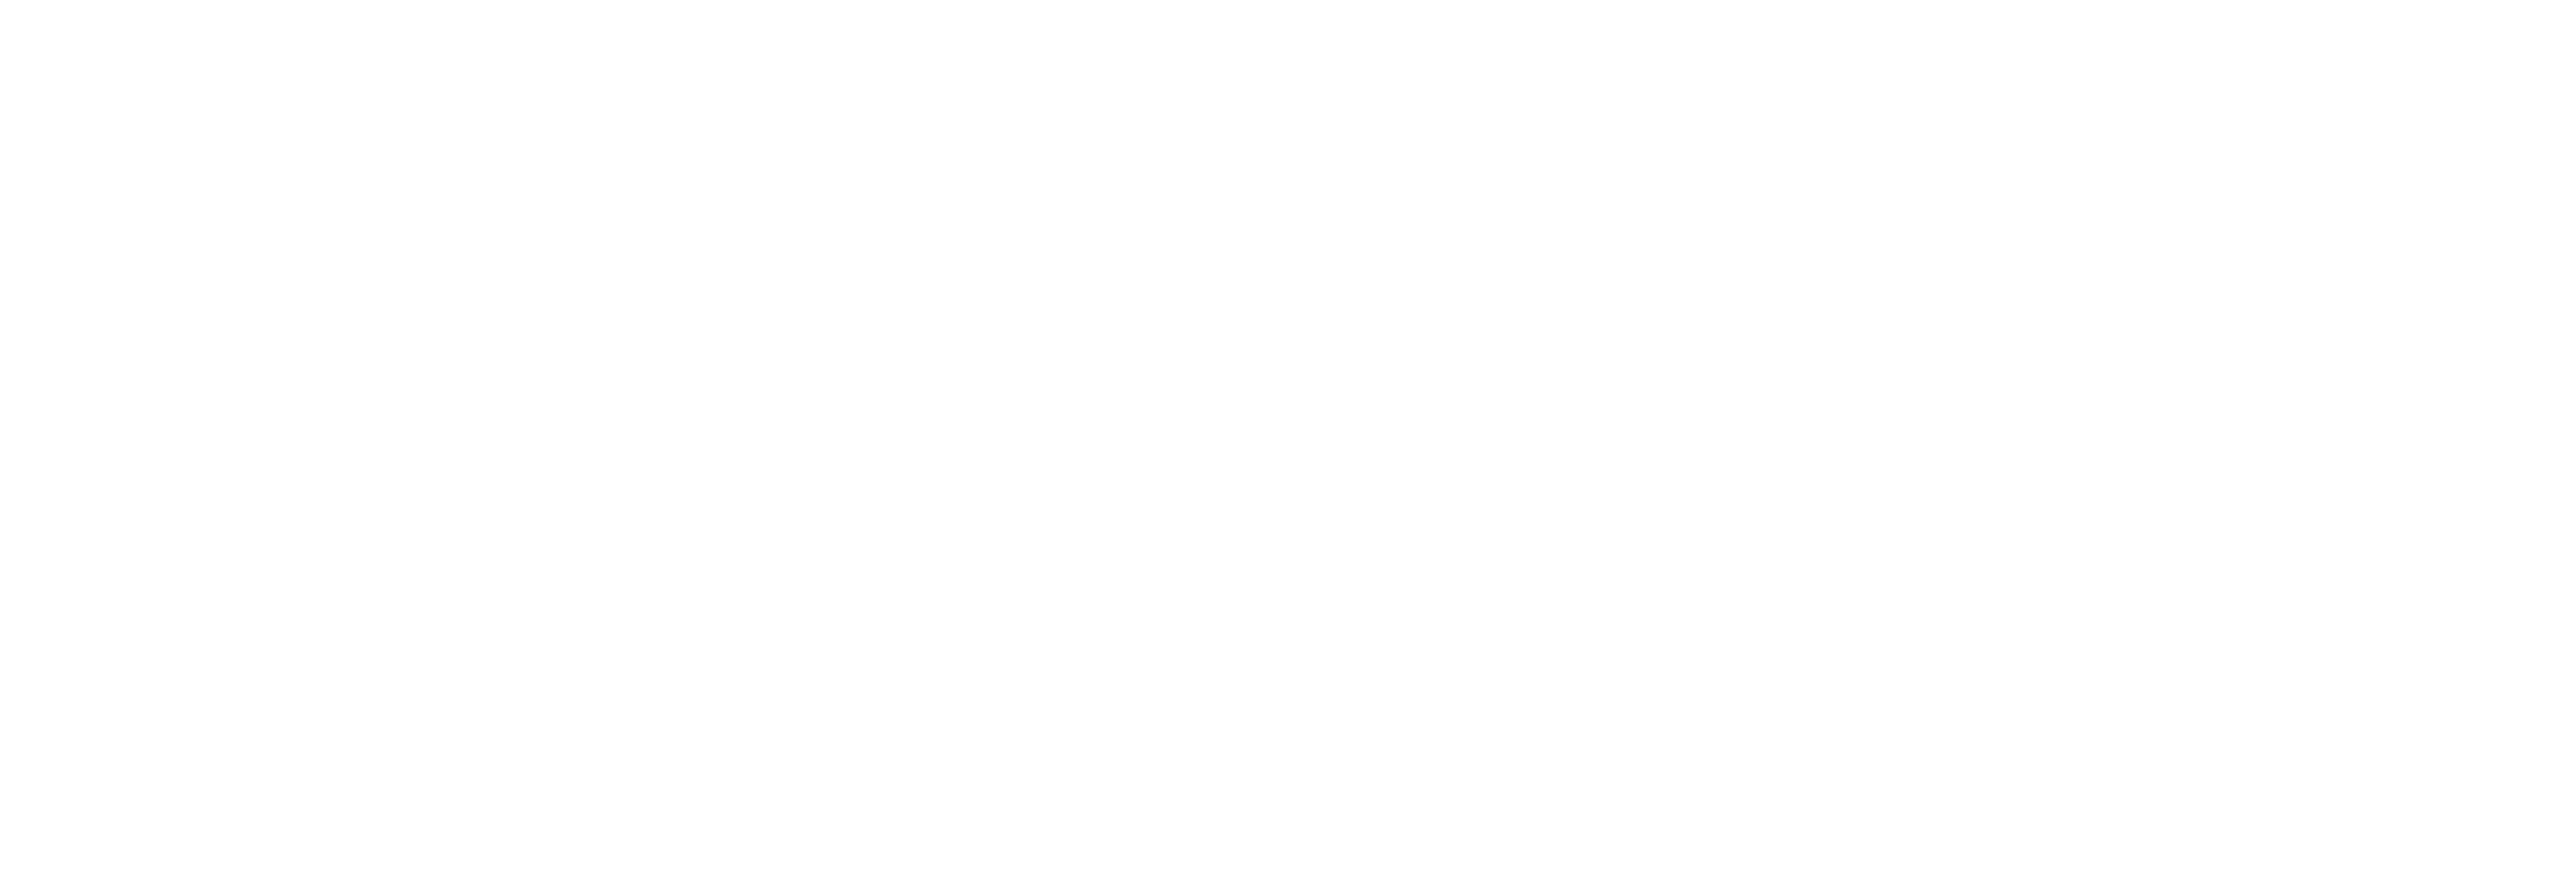 AniCura Zierikzee logo